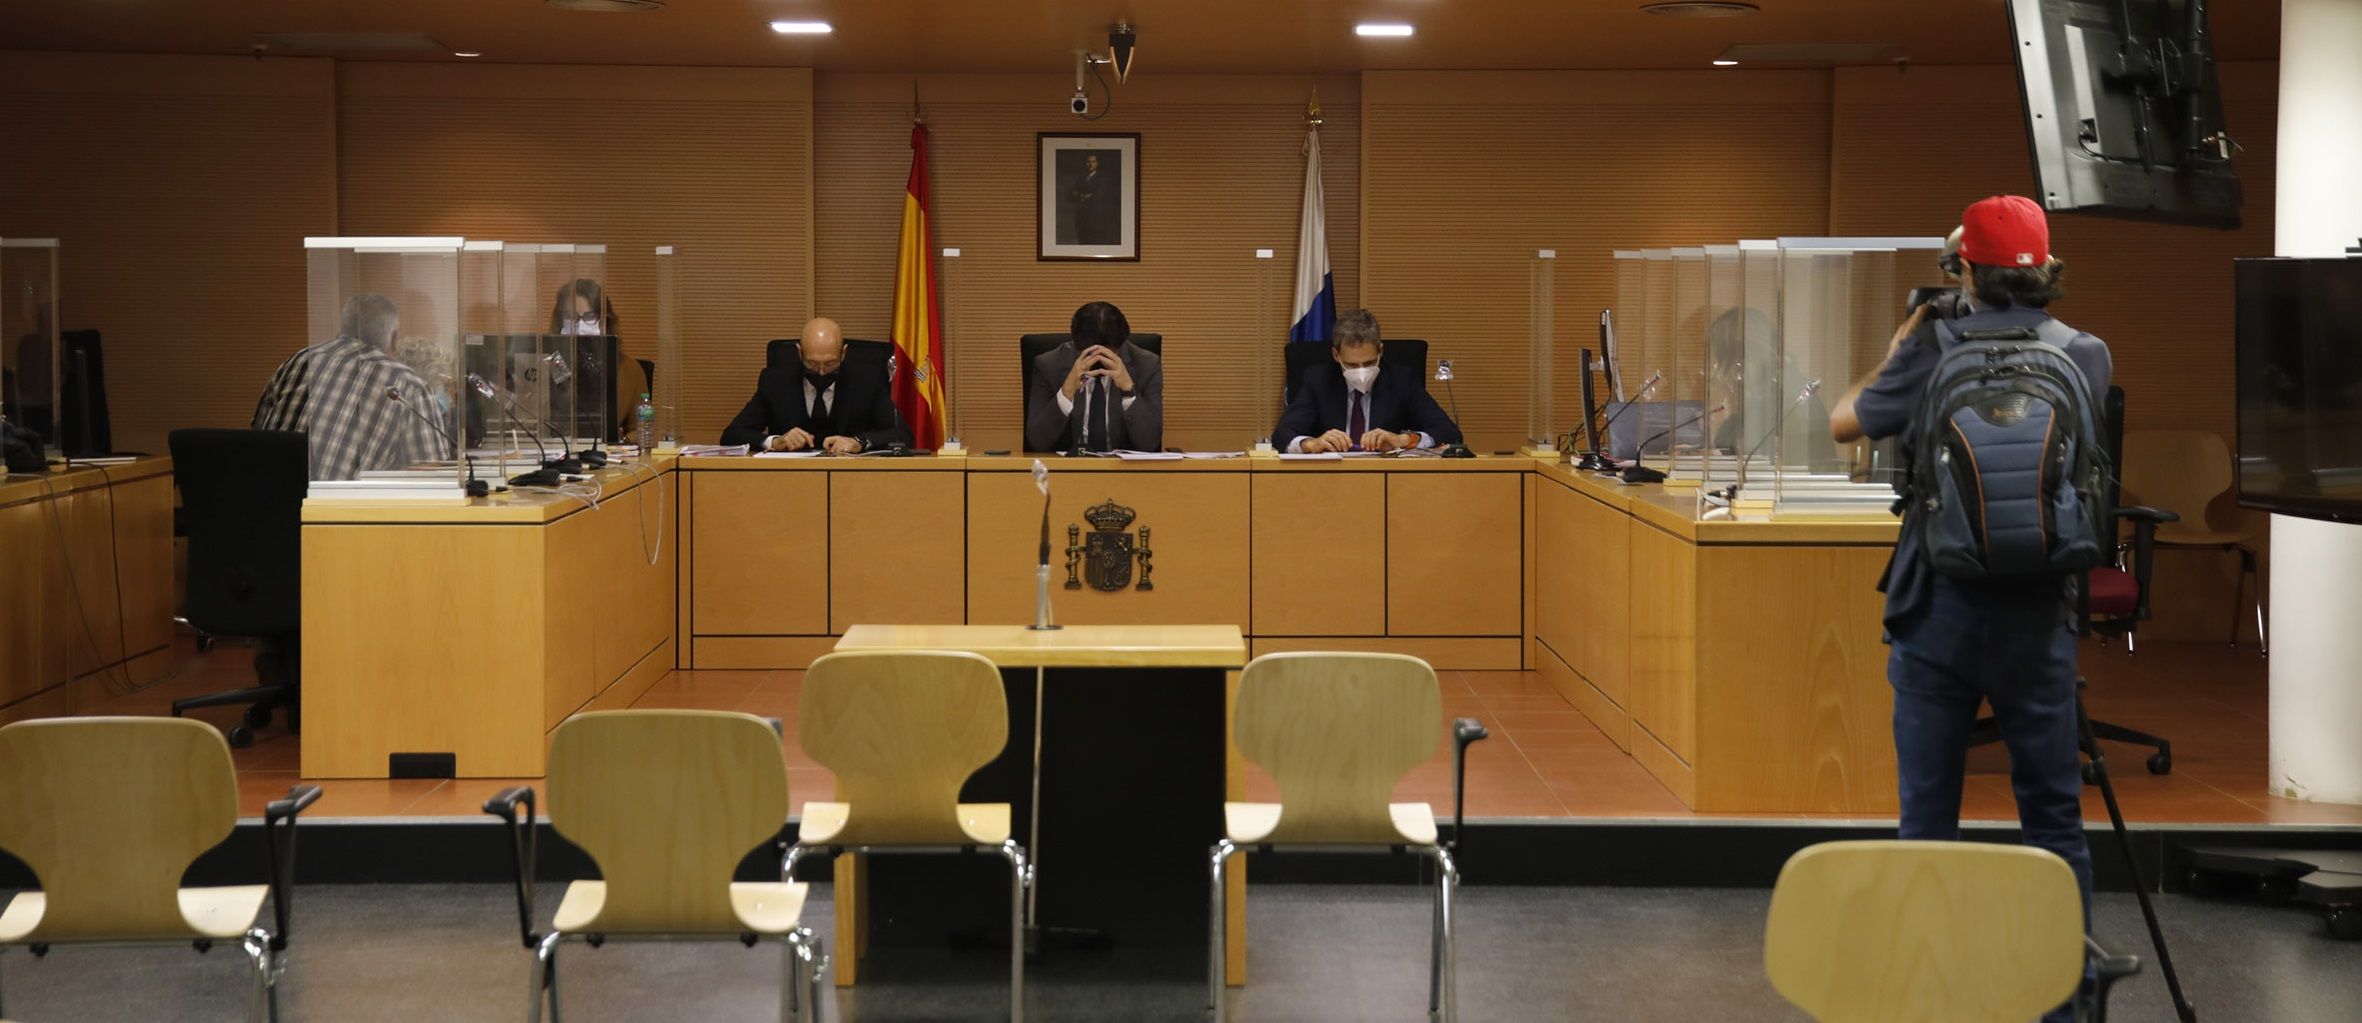 Imagen de la Sala de la Audiencia, con el acusado de espaldas (a la izquierda) junto a su letrada